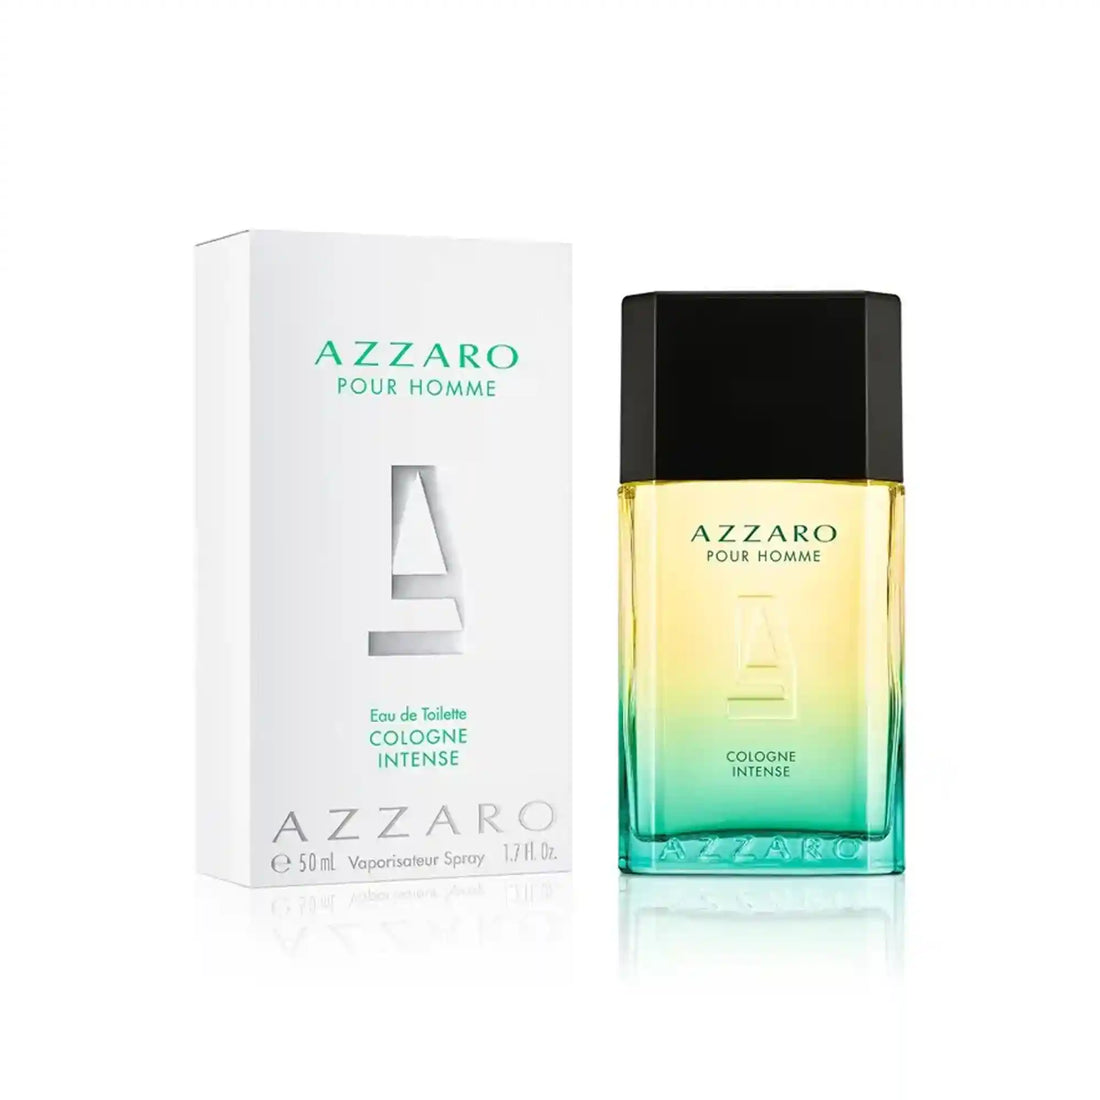 Azzaro Pour Homme Cologne Intense Eau de Toilette Spray 50ml Packaging